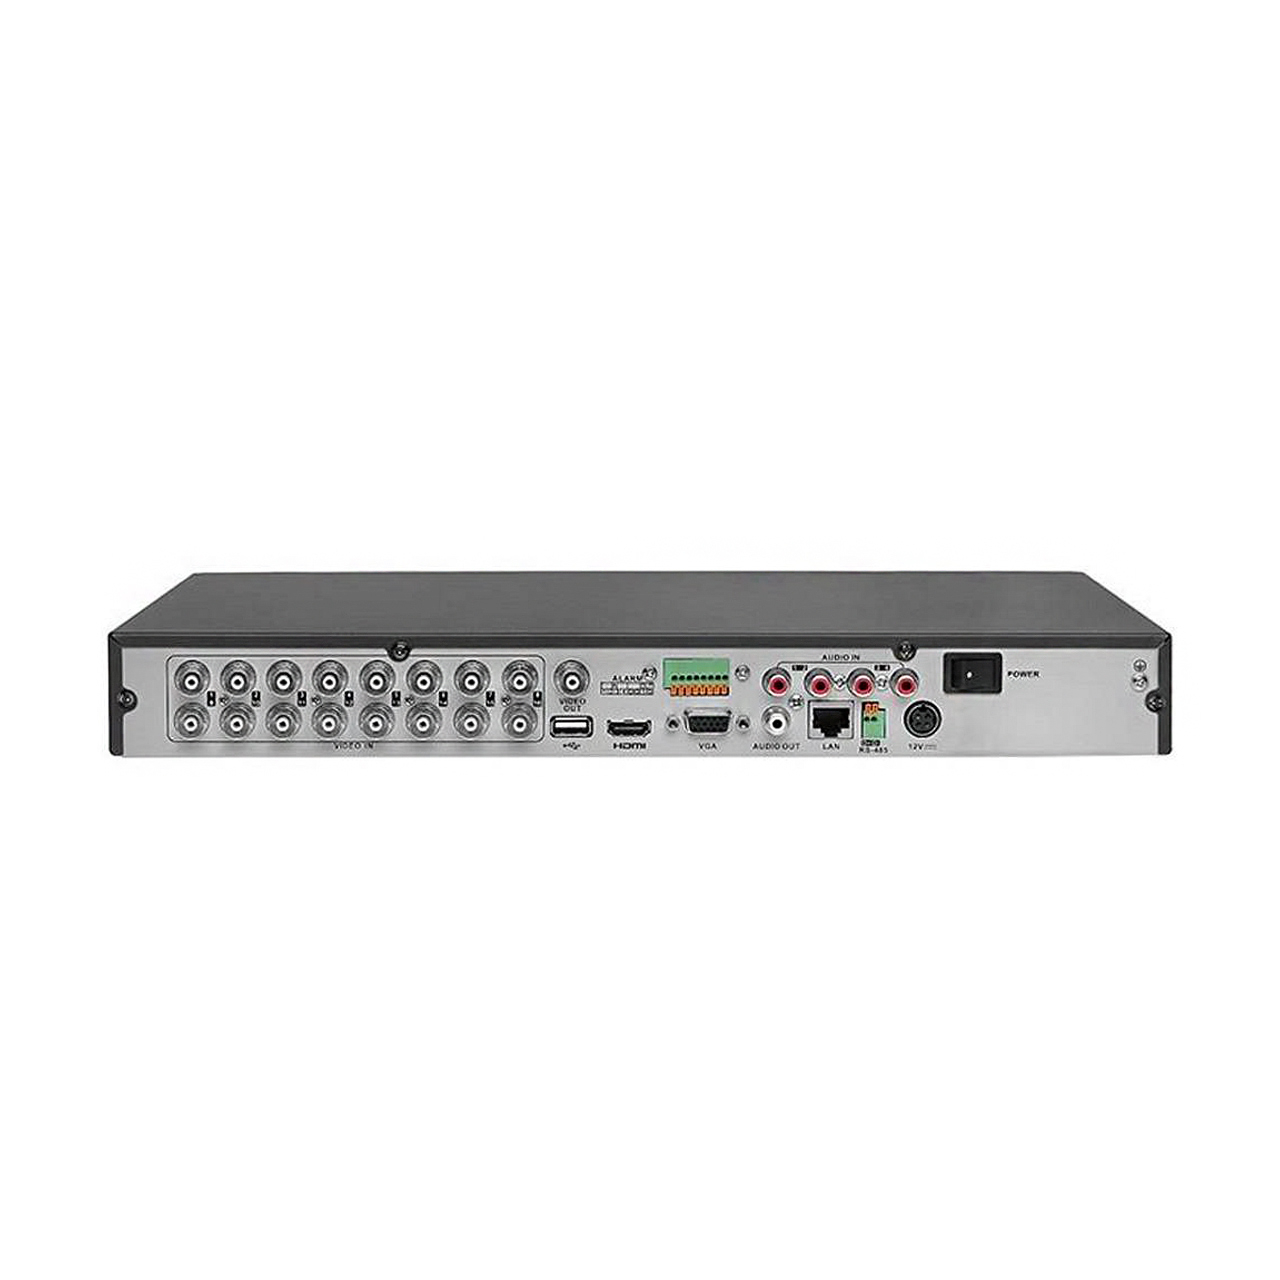 ضبط کننده دی وی ار 8 کانال مدل DS-7208HTHI-K2 برند Hikvision